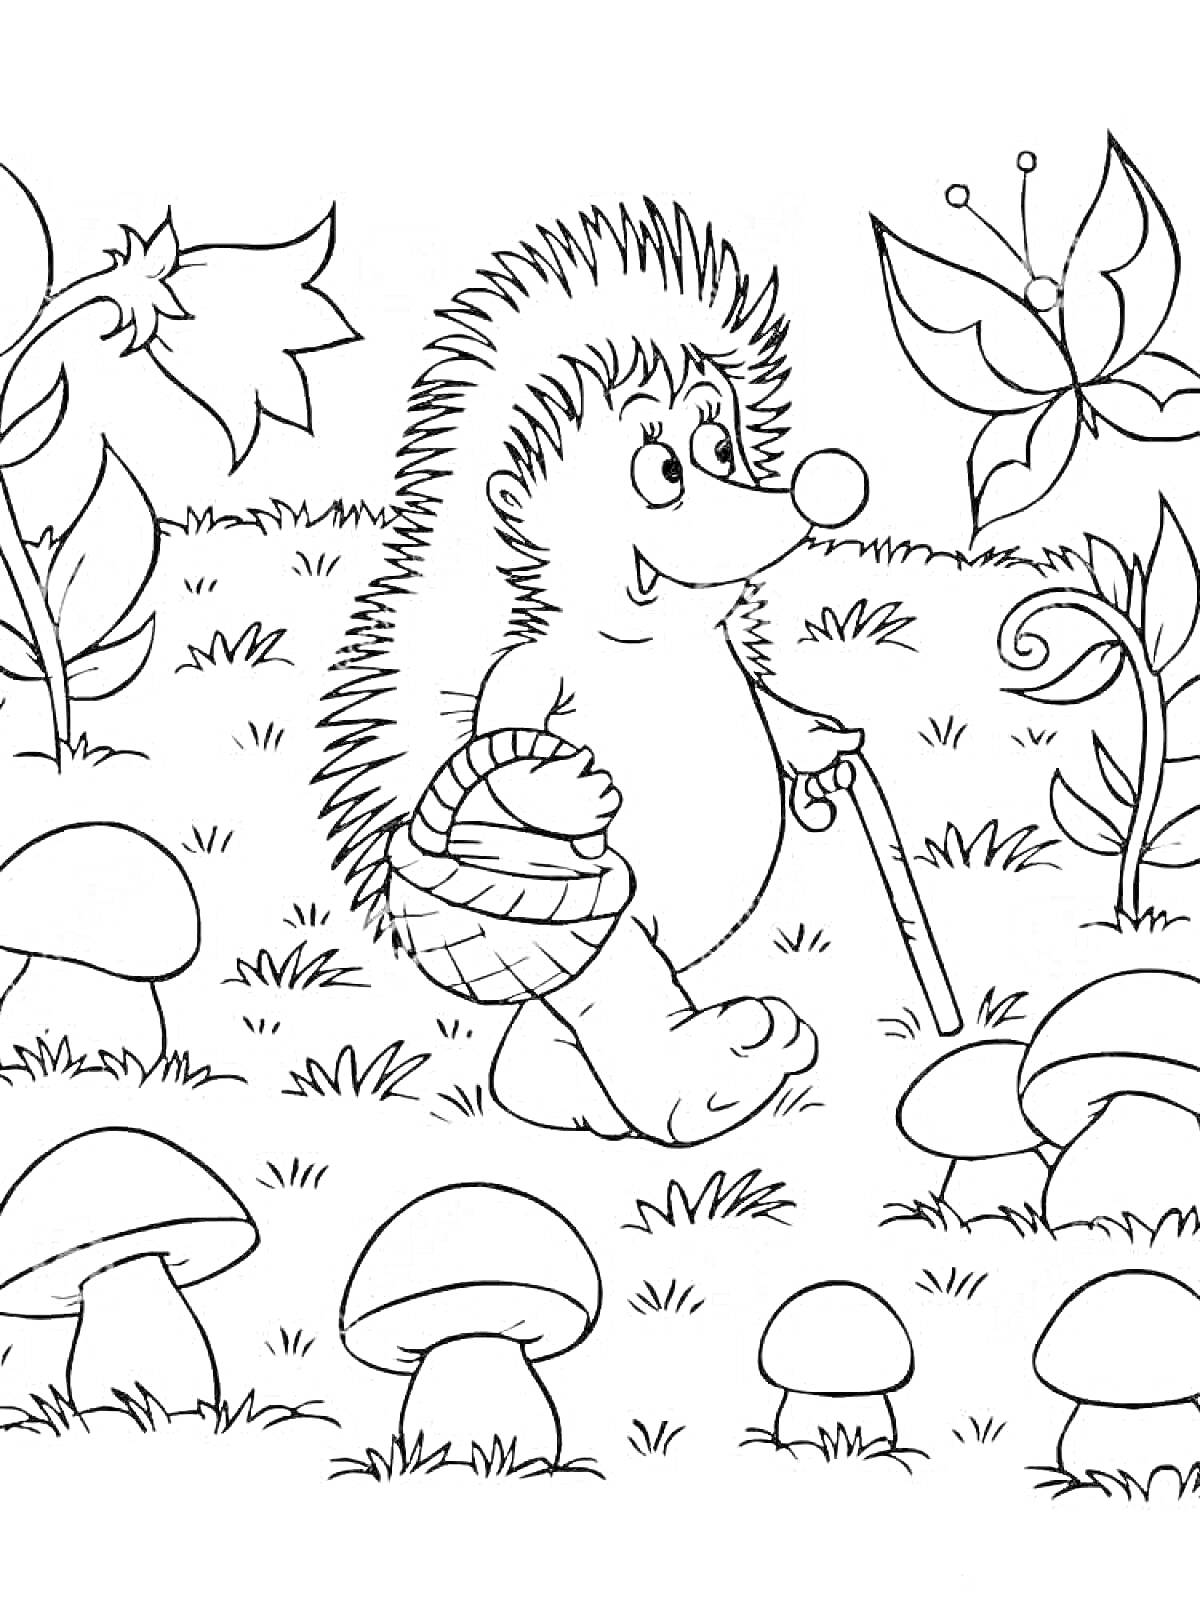 Раскраска Ёжик с корзиной и палкой, грибы и бабочка на поляне